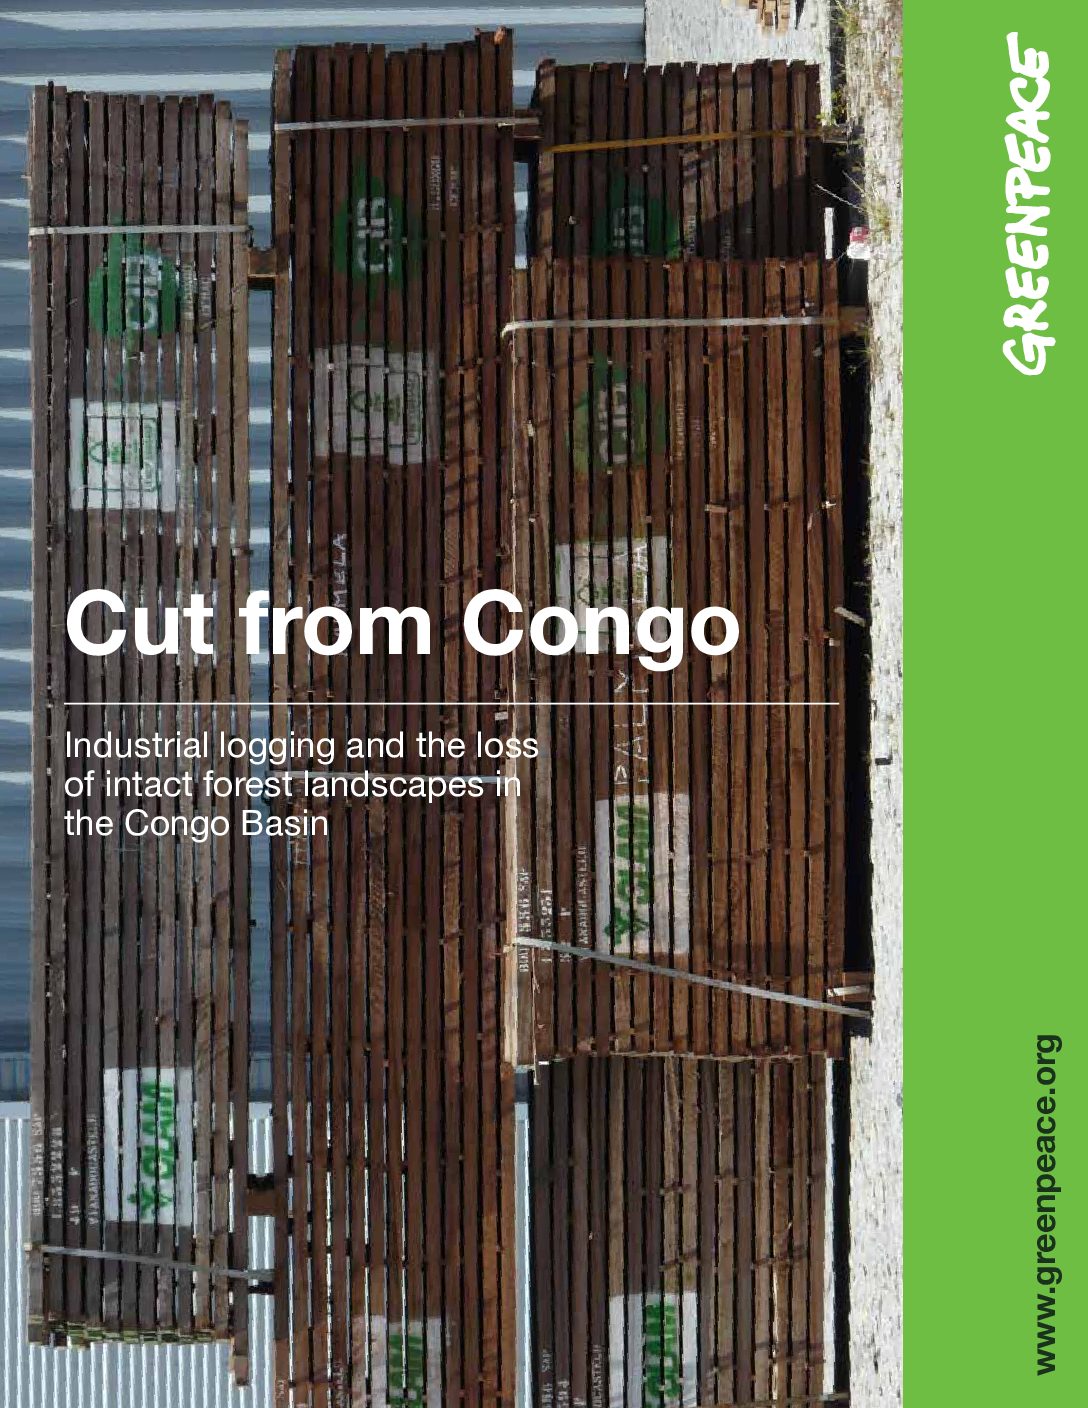 Découpes au Congo